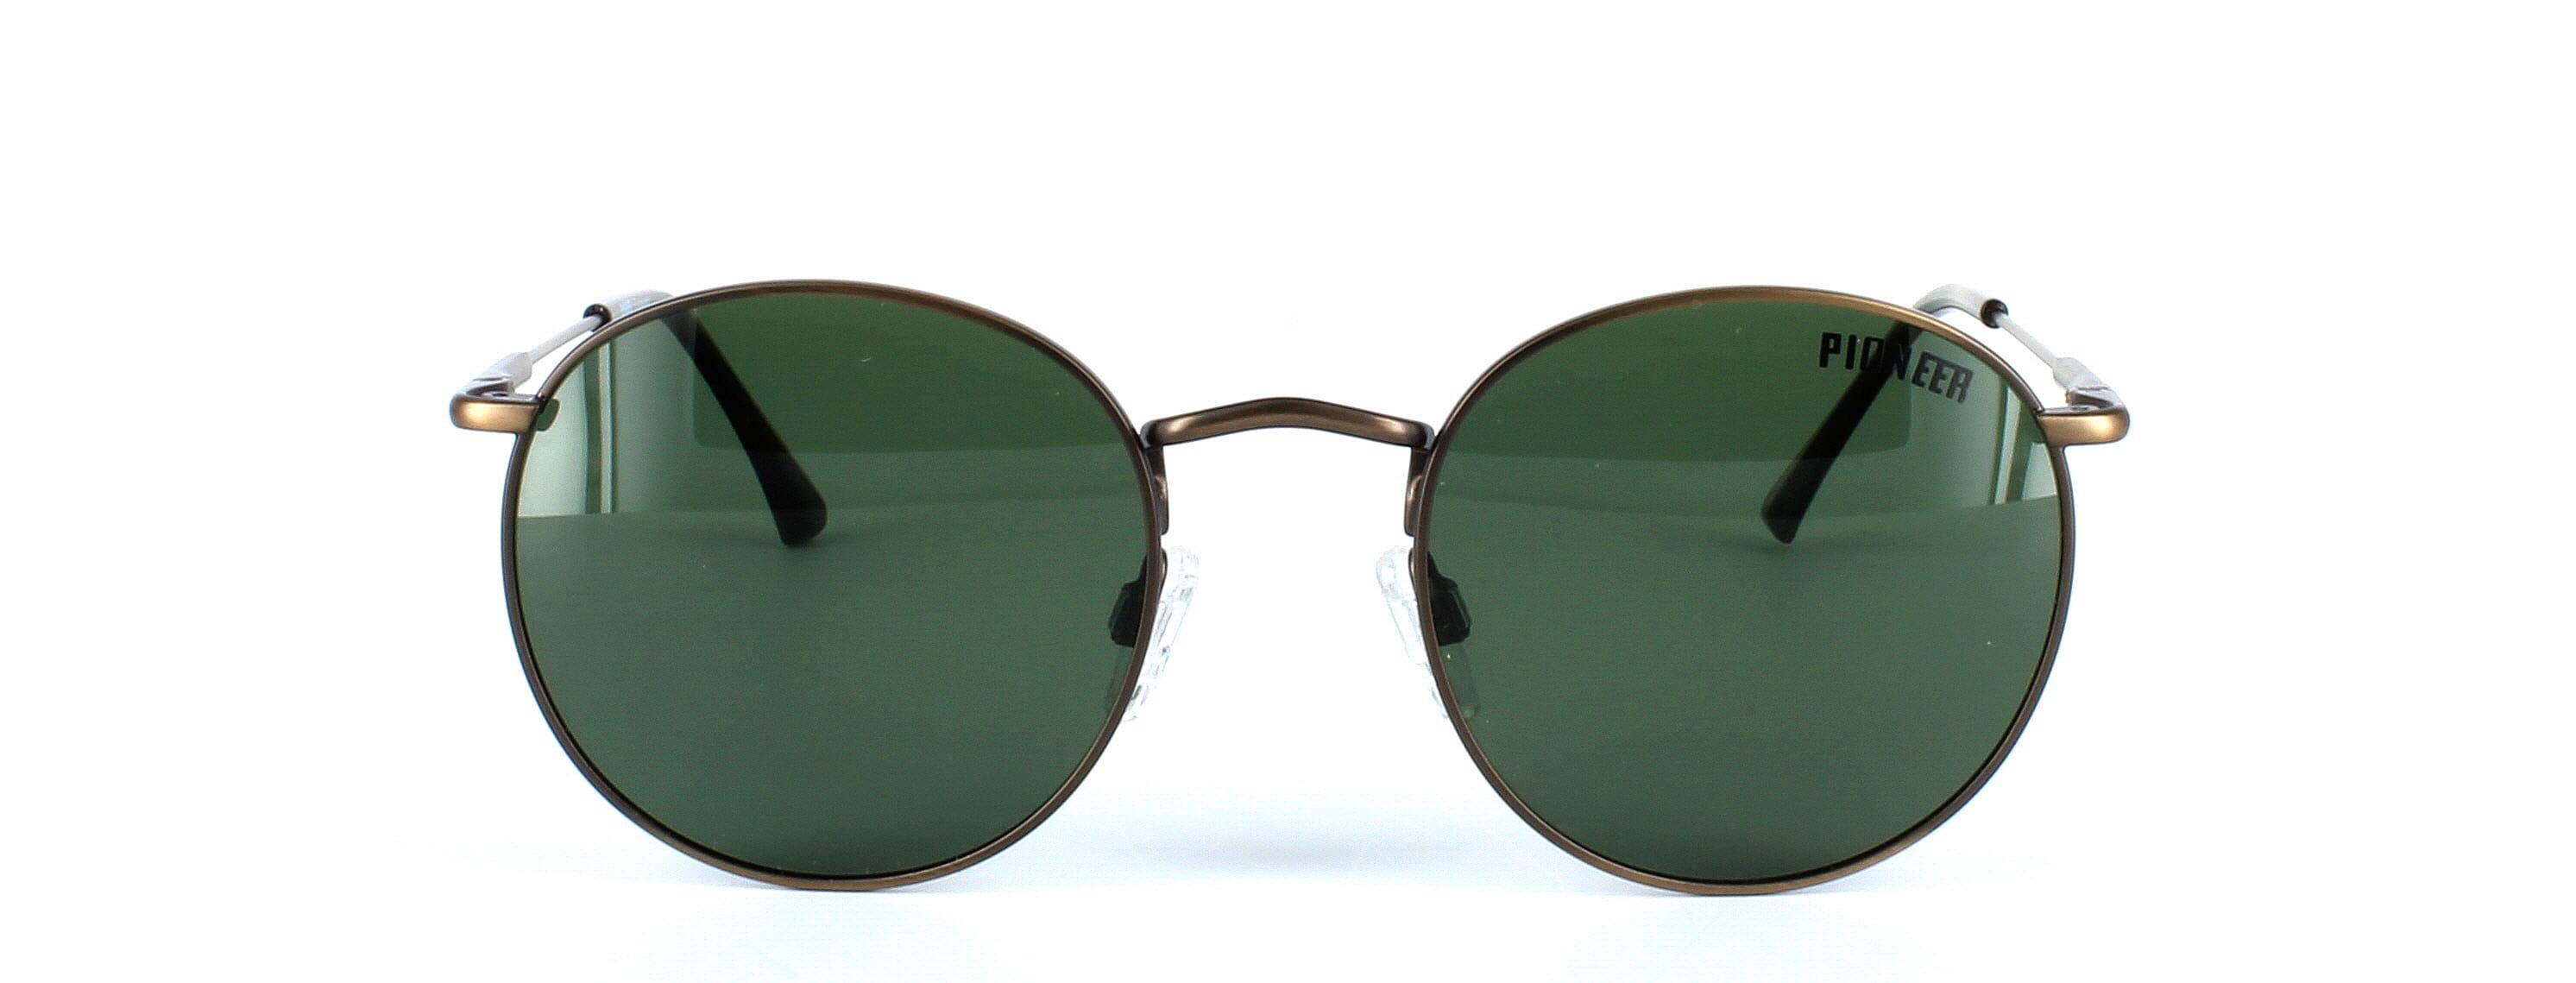 Olmeto - Round shaped pioneer prescription sunglasses - bronze - image view 5